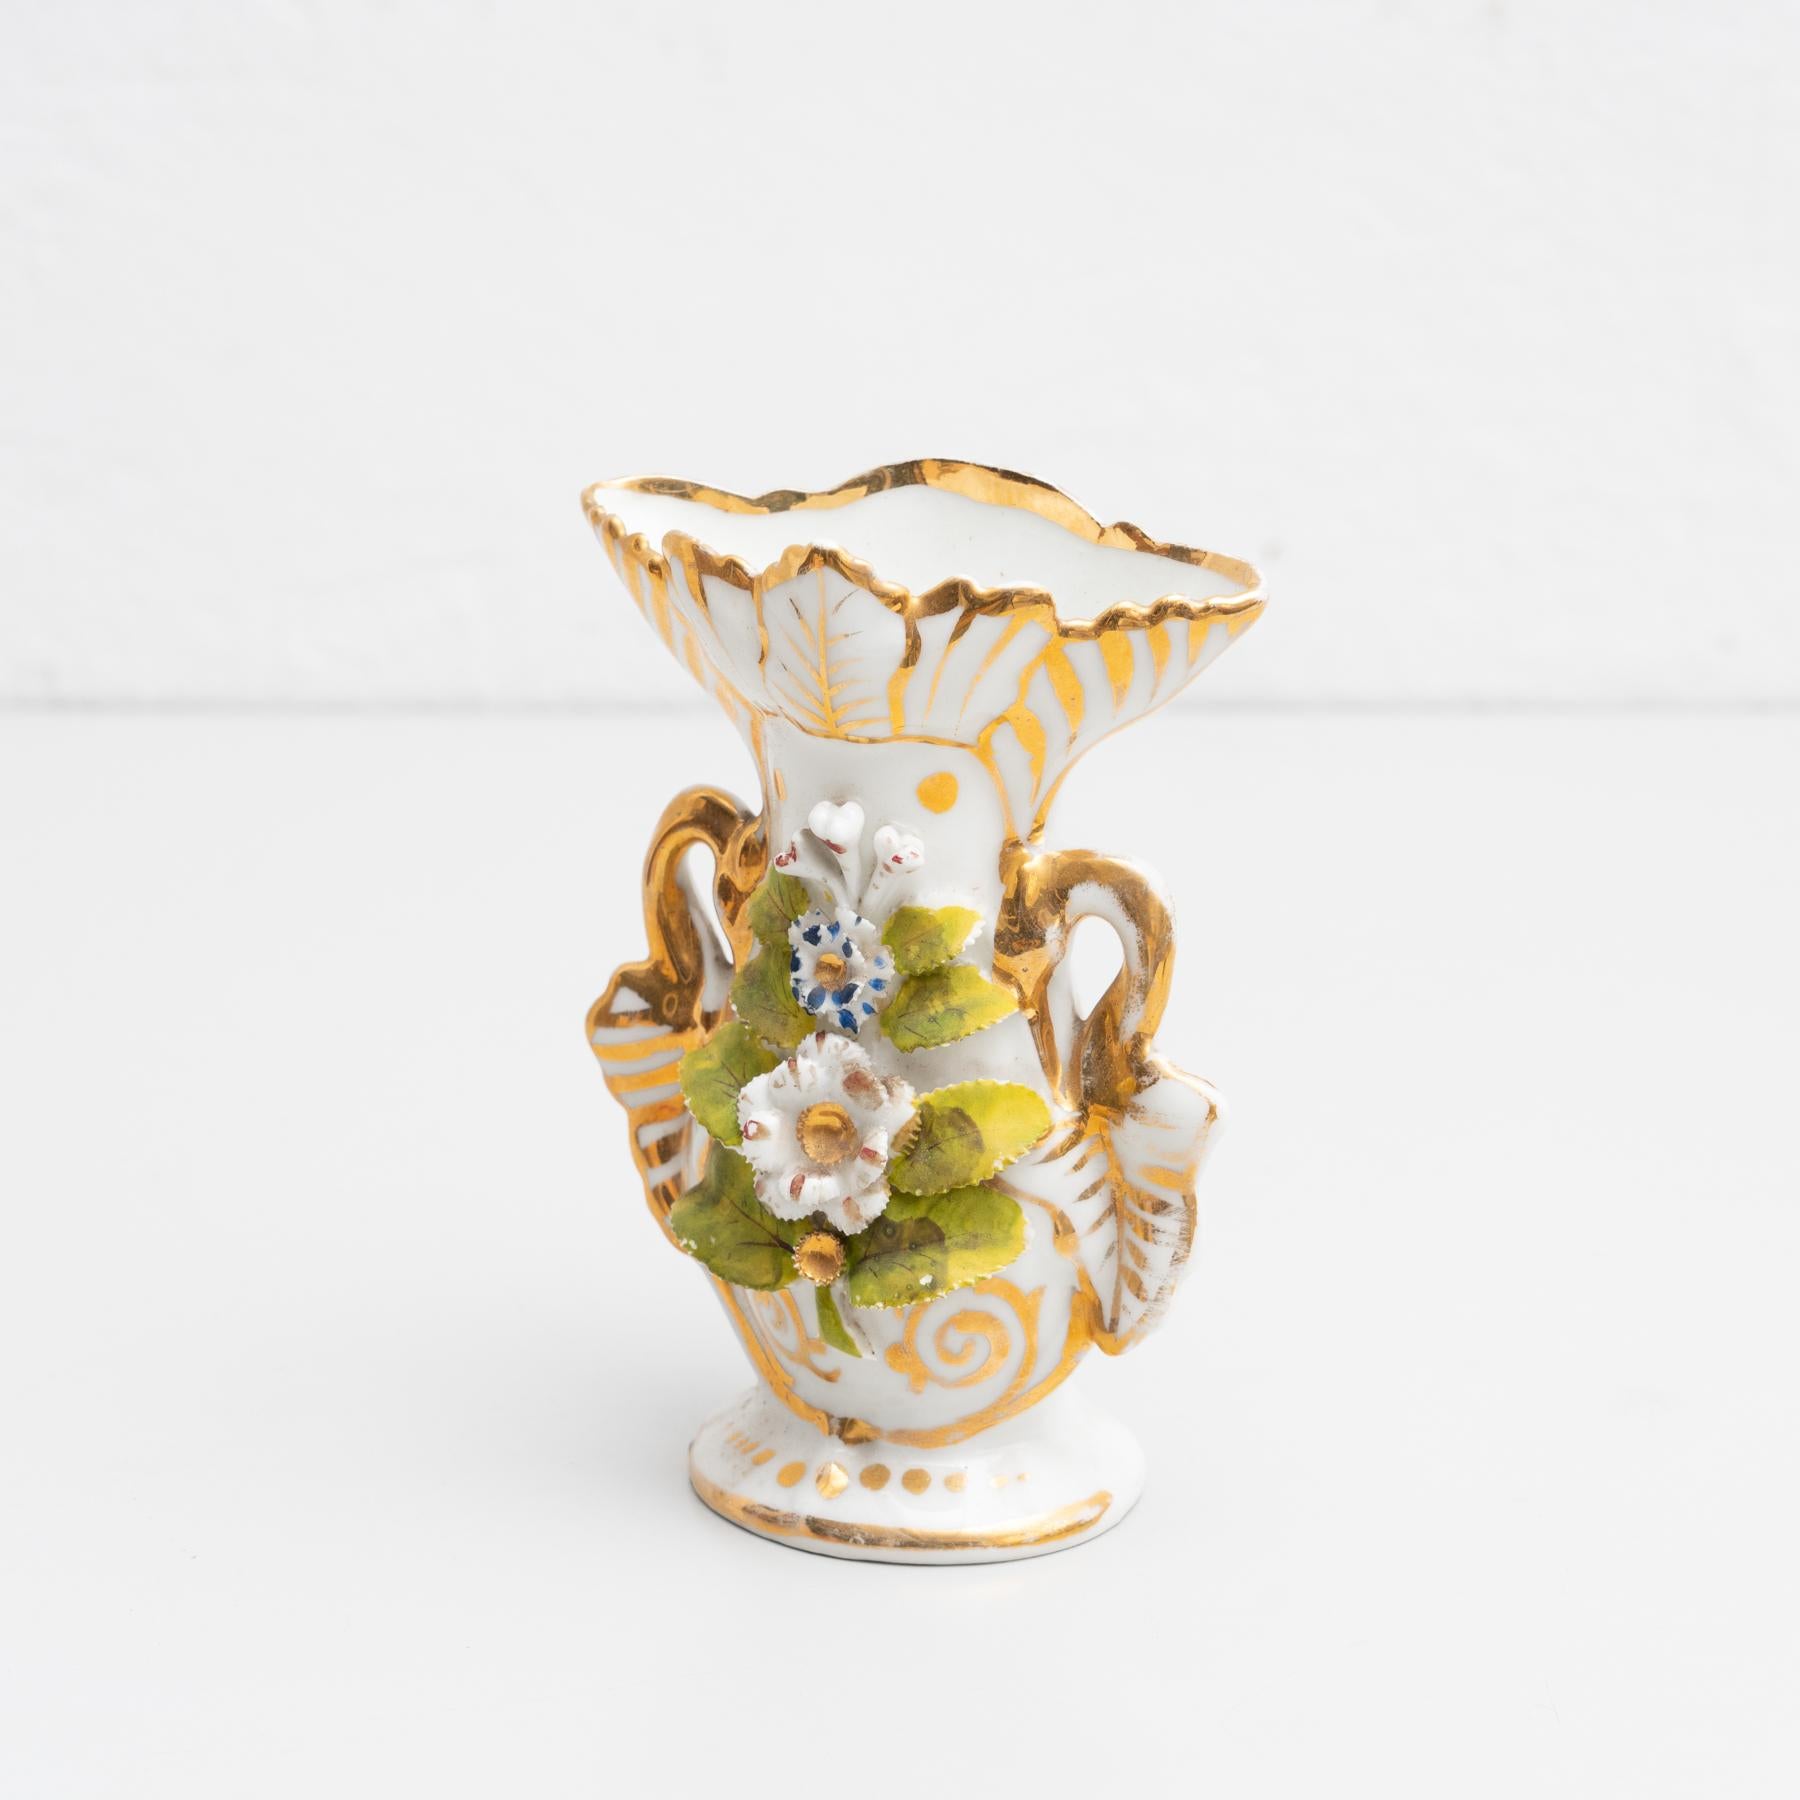 Vase Isabelline en porcelaine peint à la main dans le style Serves. 

Fabriqué par un fabricant inconnu en Espagne, vers le 19e siècle.

En état d'origine, avec une usure mineure conforme à l'âge et à l'utilisation, préservant une belle